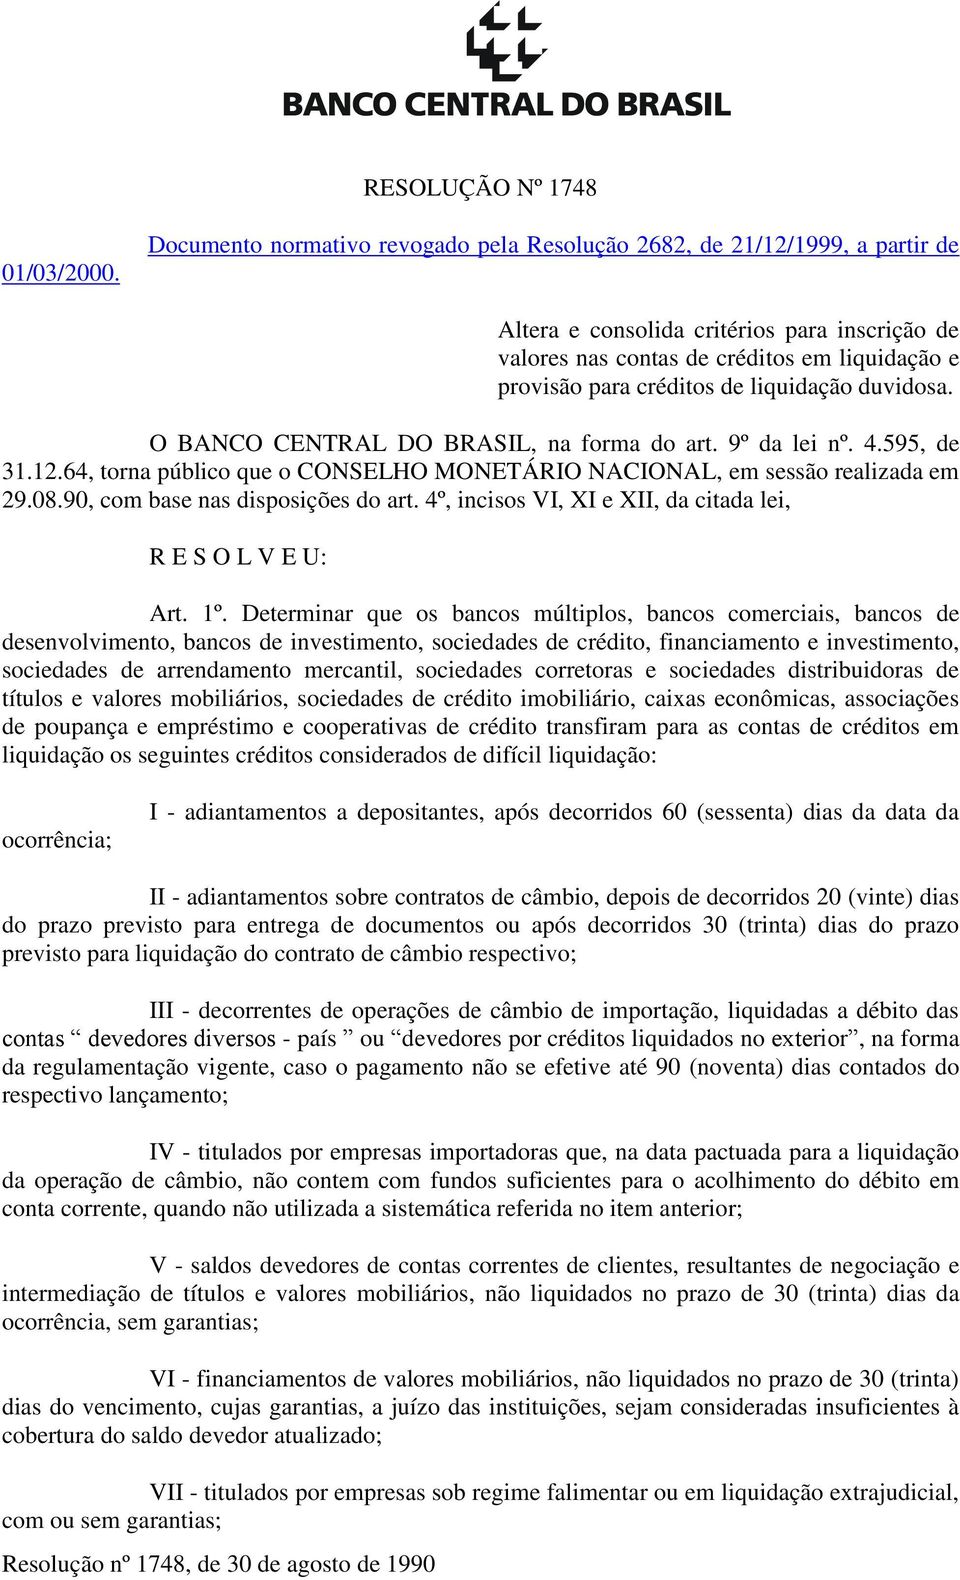 liquidação duvidosa. O BANCO CENTRAL DO BRASIL, na forma do art. 9º da lei nº. 4.595, de 31.12.64, torna público que o CONSELHO MONETÁRIO NACIONAL, em sessão realizada em 29.08.